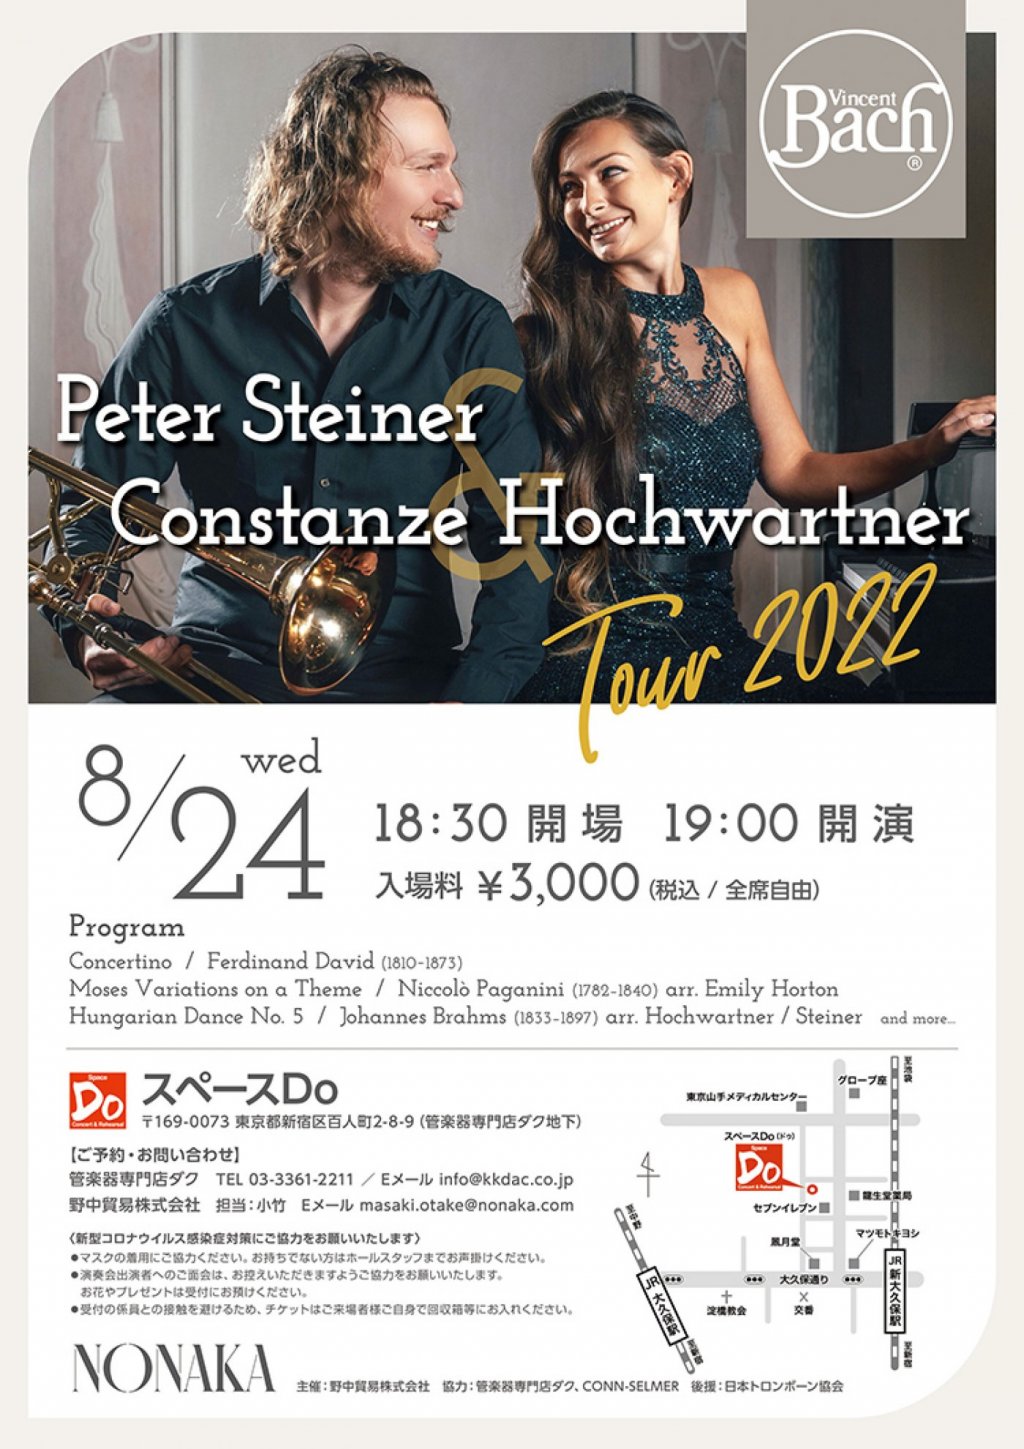 Peter Steiner & Constanze Hochwartner Tour 2022